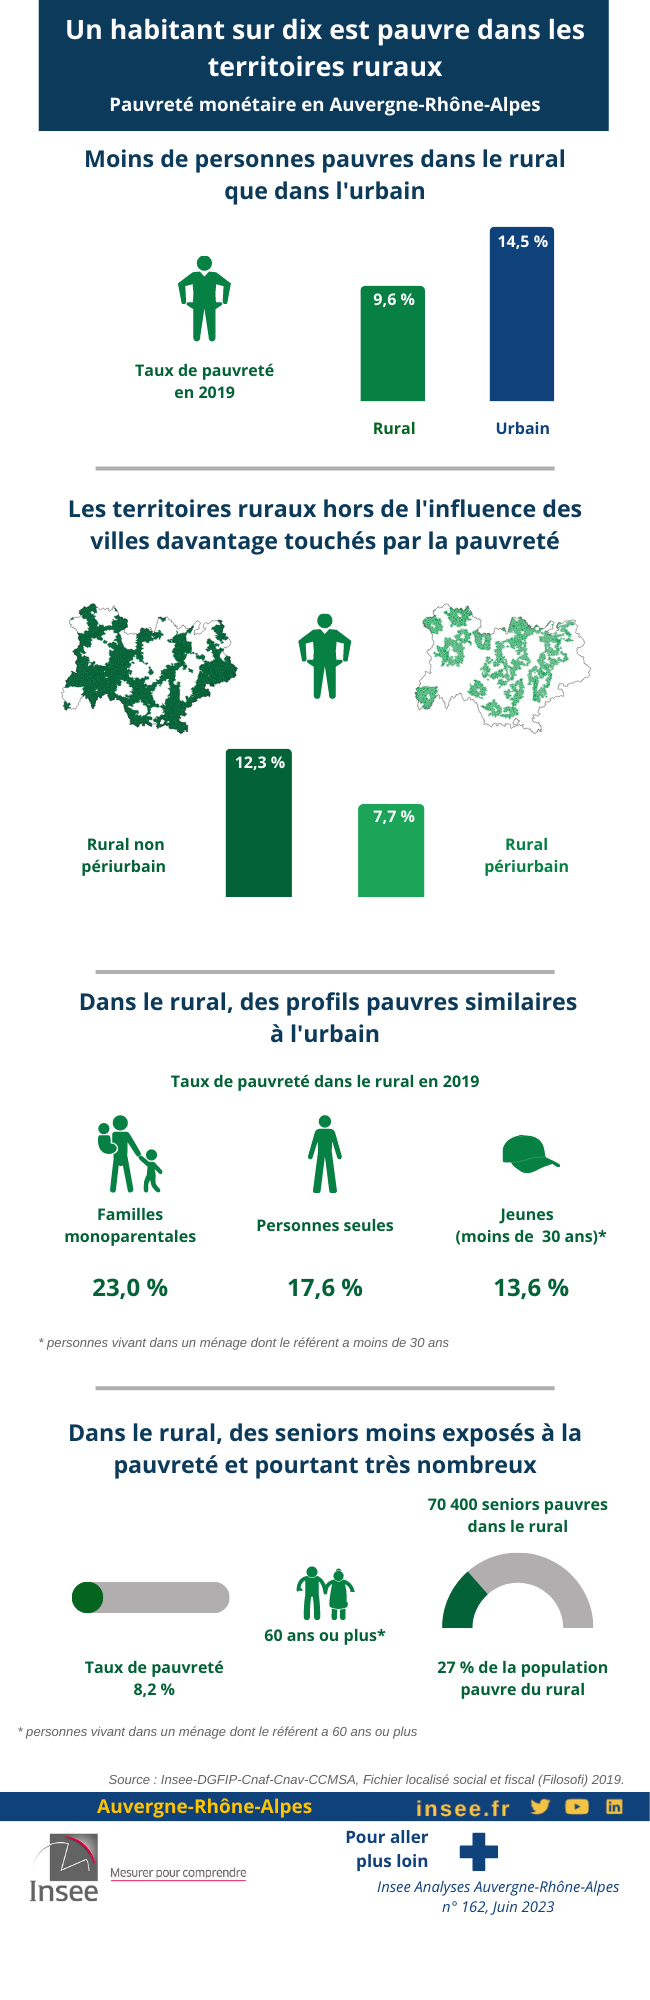 Pauvreté monétaire en Auvergne-Rhône-Alpes. Un habitant sur dix est pauvre dans les territoires ruraux.